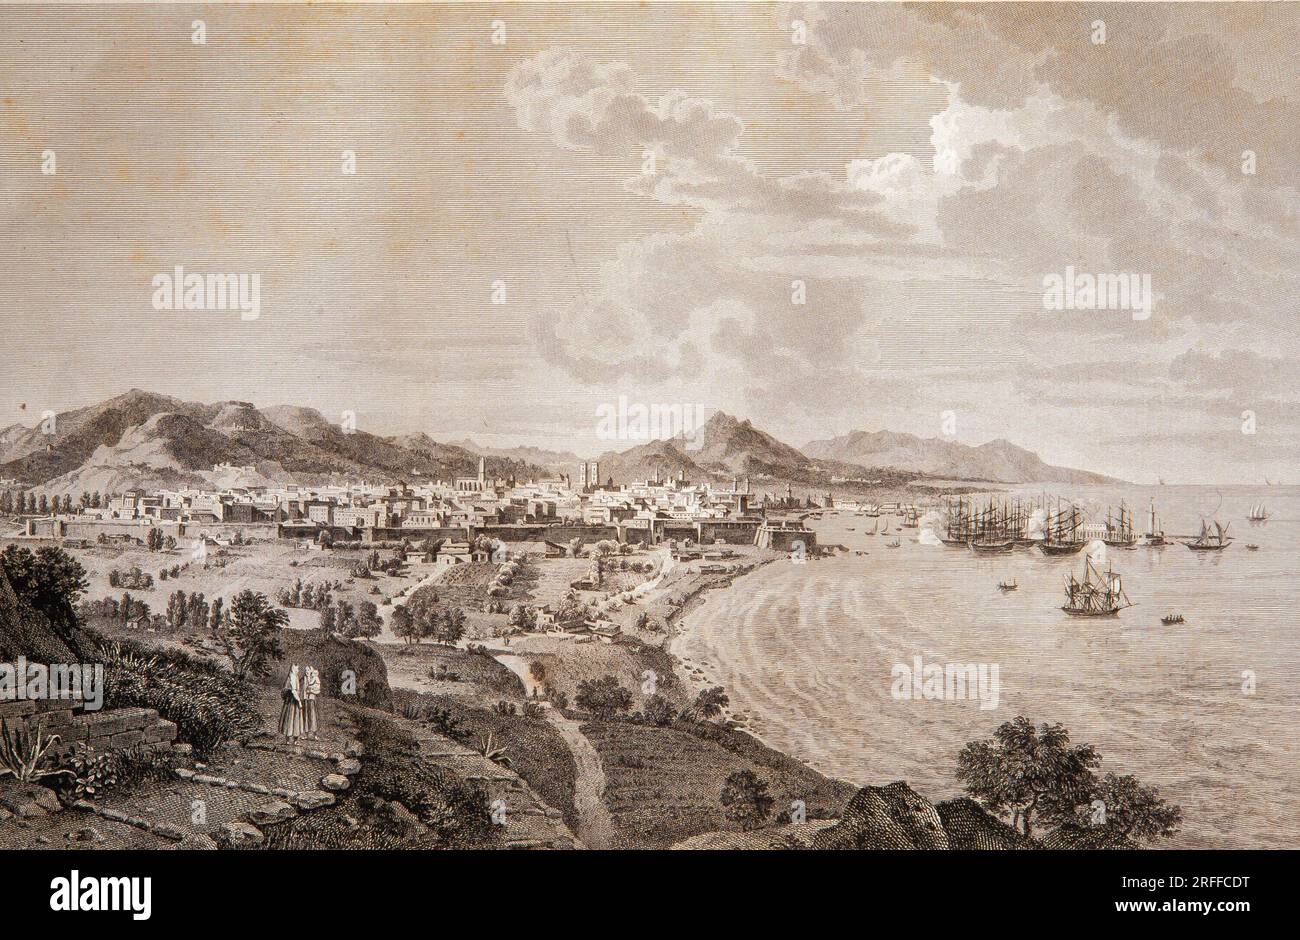 Alexandre de Laborde / Puerto de Barcelona, del libro de viaje 'Voyage pittoresque et historique de l'Espagne', siglo XIX. M.H.C.B. Stock Photo